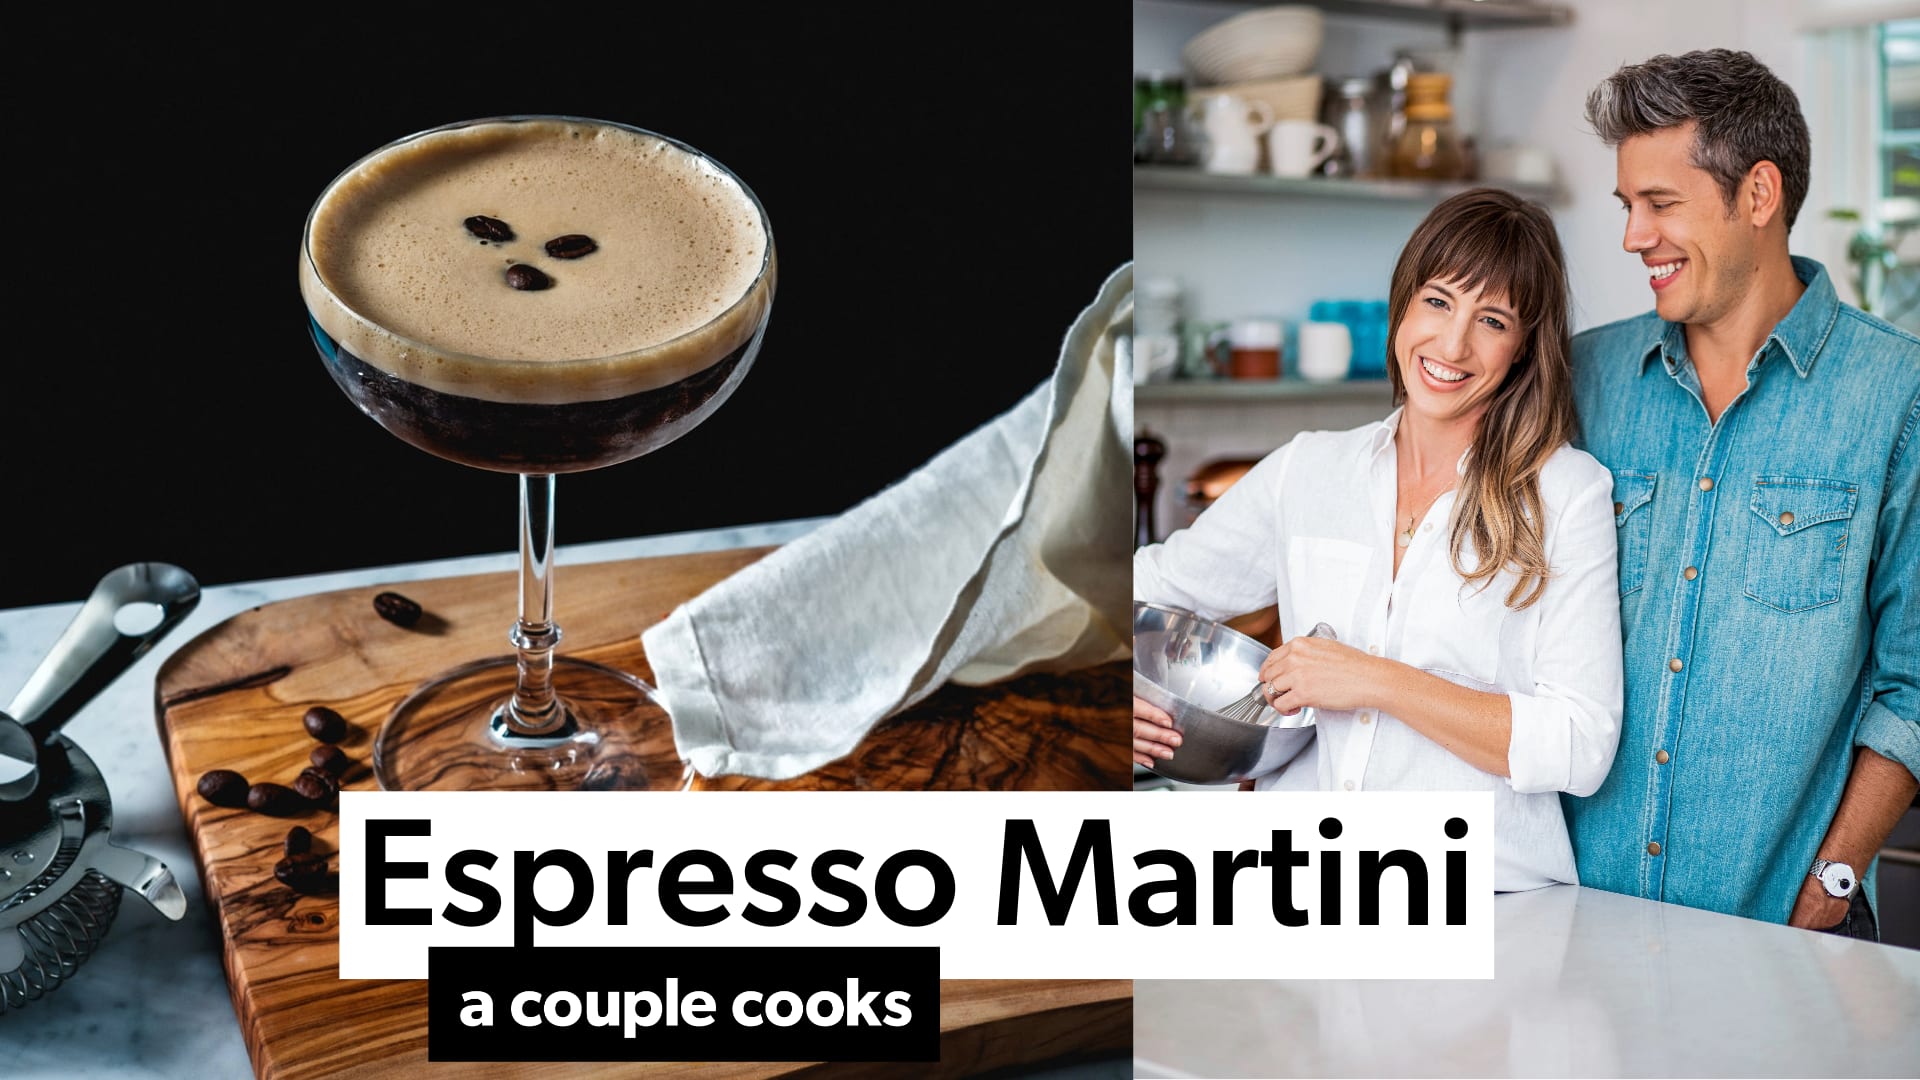 Espresso Martini – the kitchen bachelor